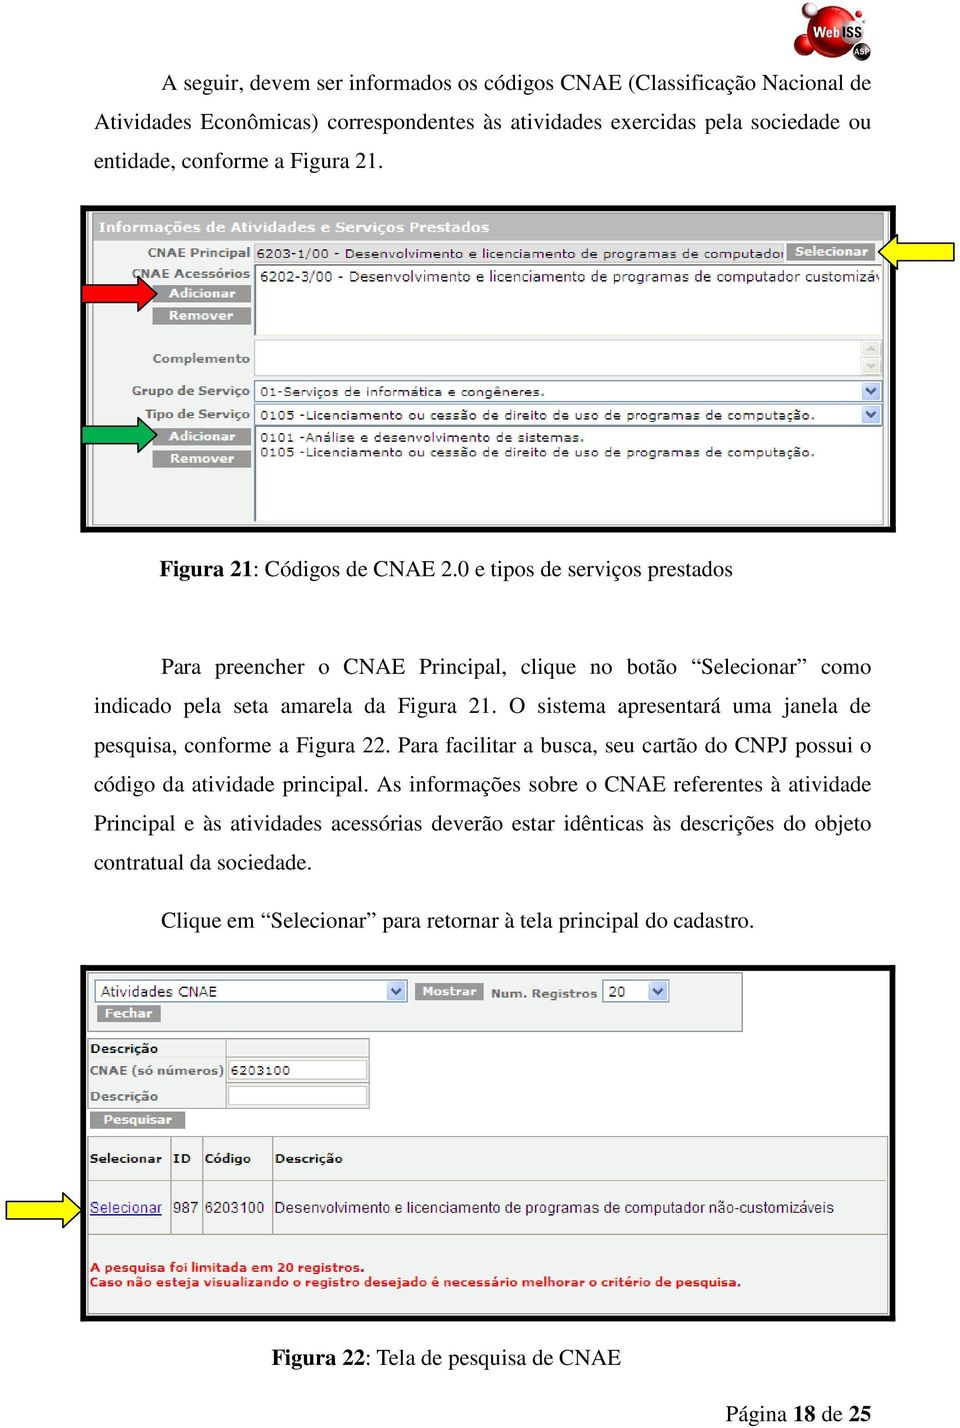 O sistema apresentará uma janela de pesquisa, conforme a Figura 22. Para facilitar a busca, seu cartão do CNPJ possui o código da atividade principal.